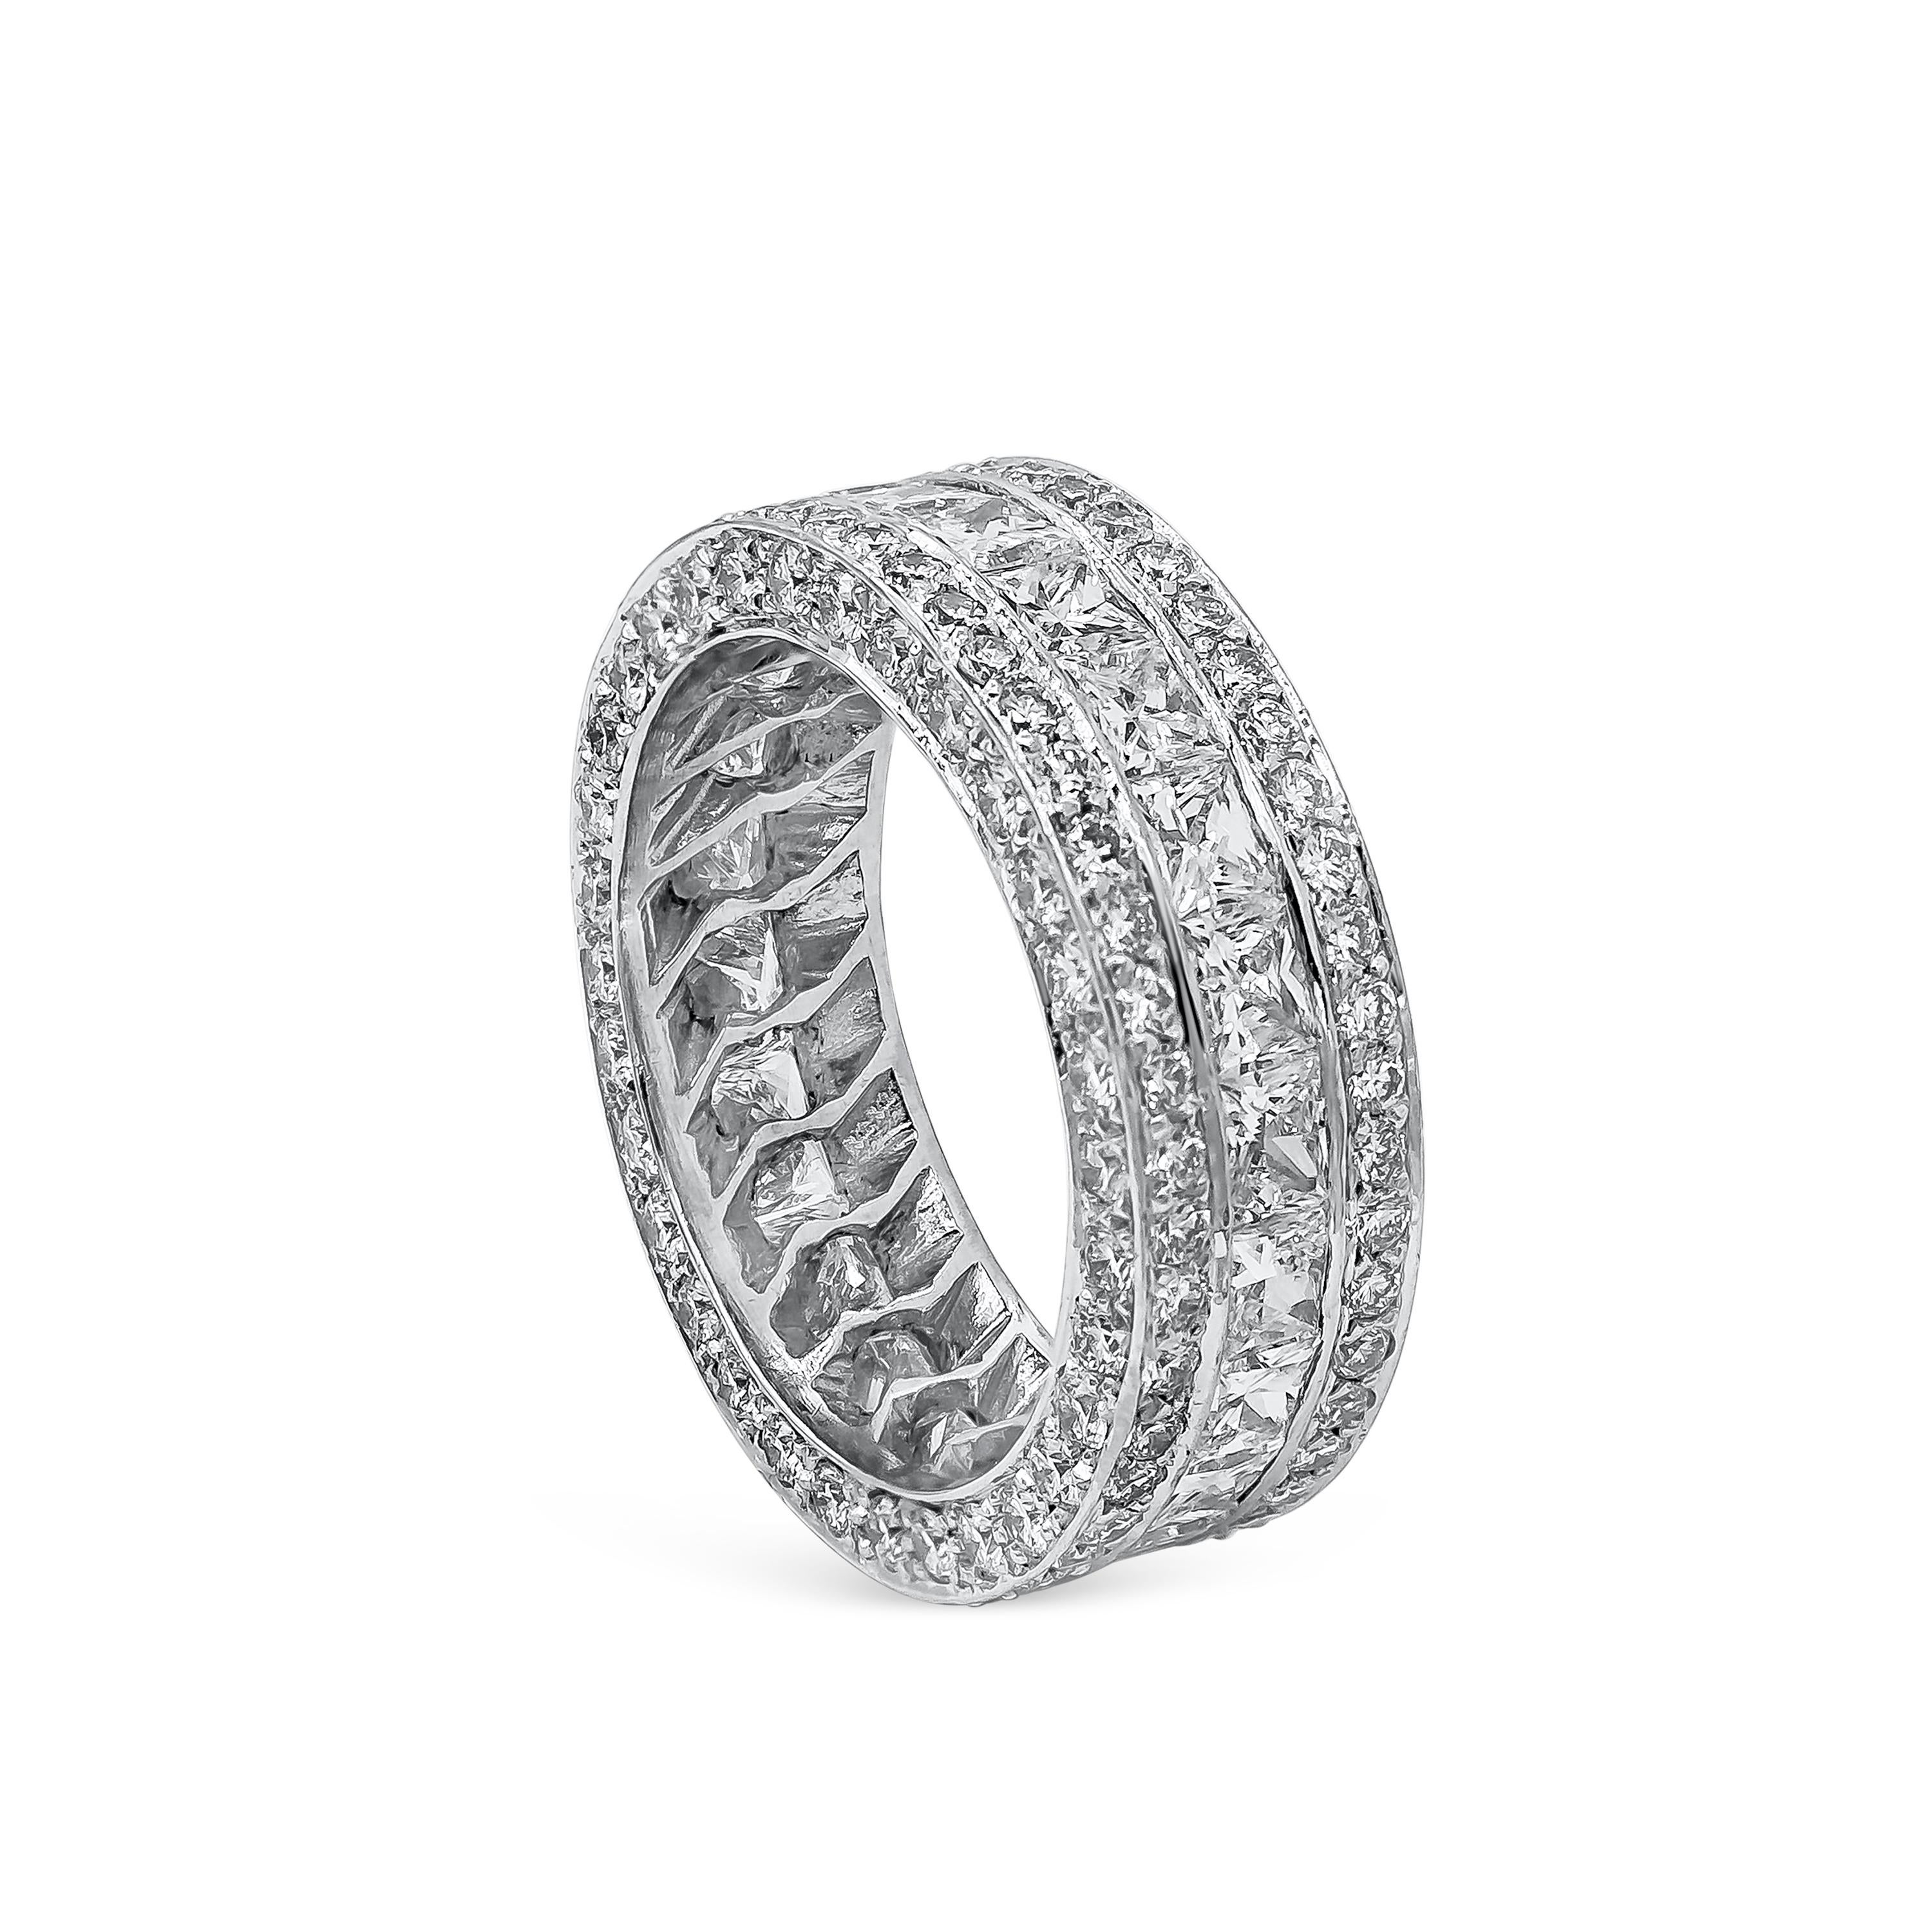 Ein atemberaubender Ring mit zwei Reihen runder Brillanten von insgesamt 2,40 Karat, die von einer Reihe Diamanten im Prinzessinnenschliff von insgesamt 2,75 Karat getrennt sind. Fassung aus poliertem Platin. Perfekt für besondere Anlässe. Größe 6,5